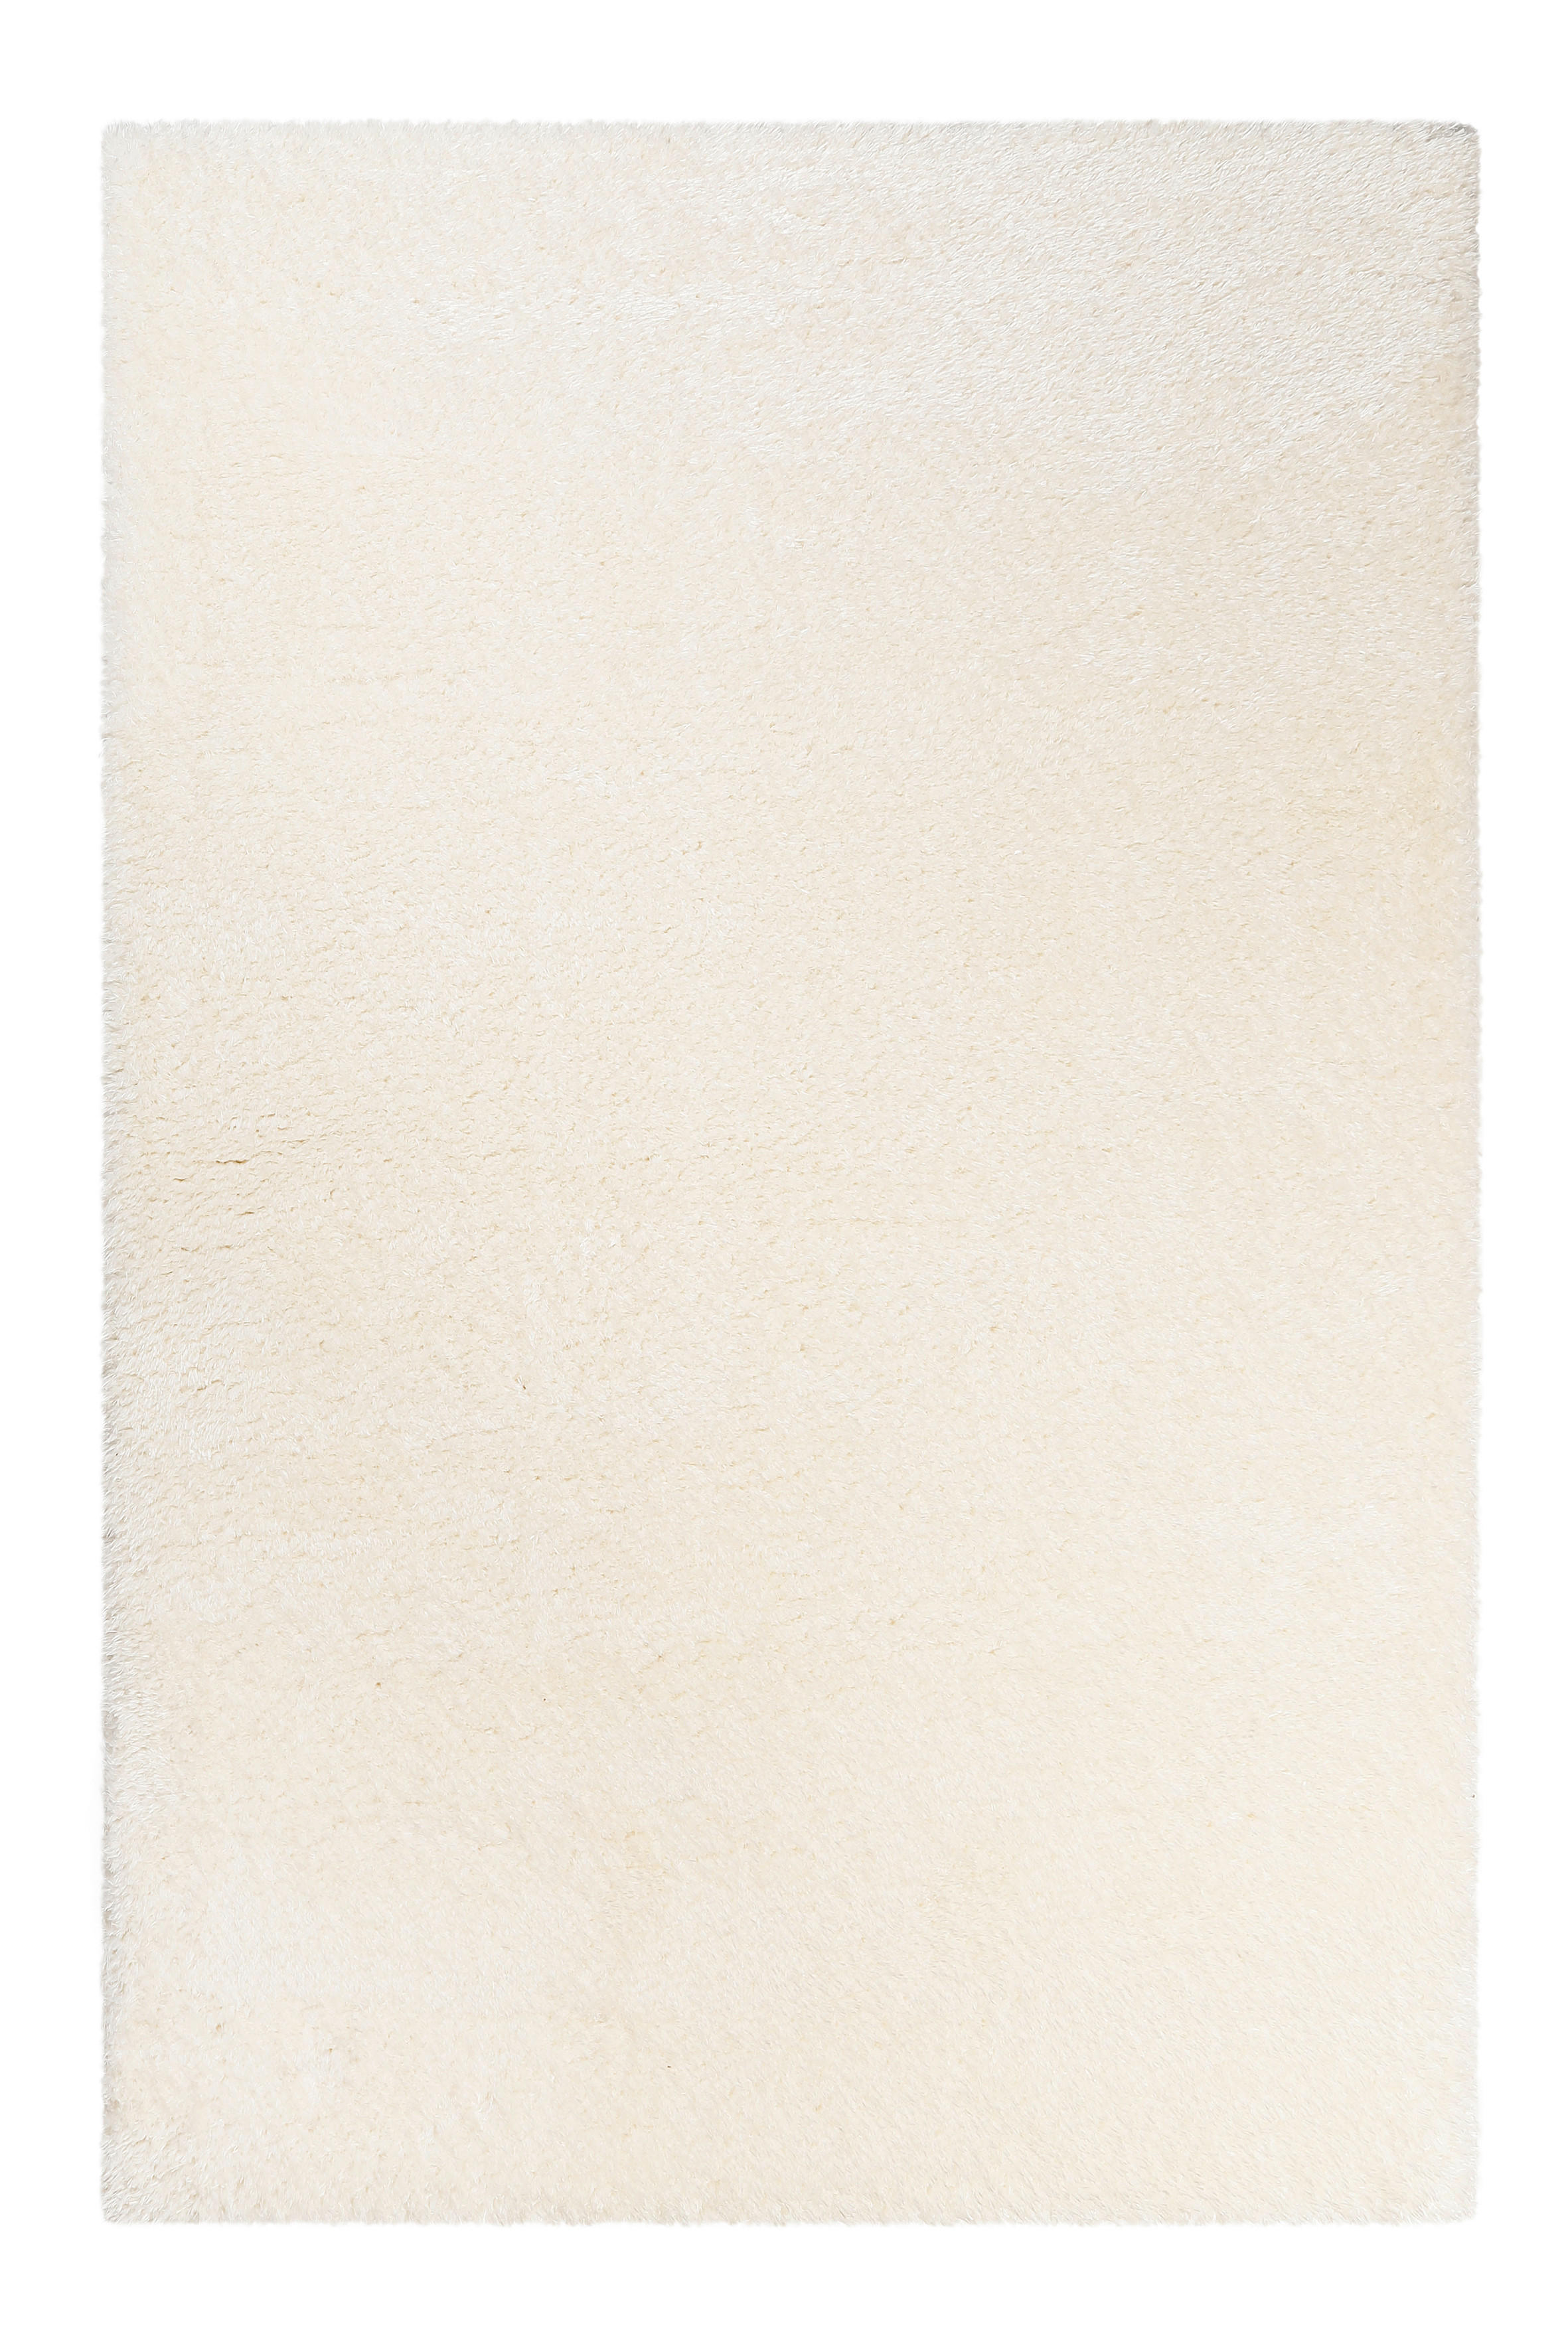 HOCHFLORTEPPICH 160/225 cm Toubkal  - Weiß, KONVENTIONELL, Textil (160/225cm) - Novel